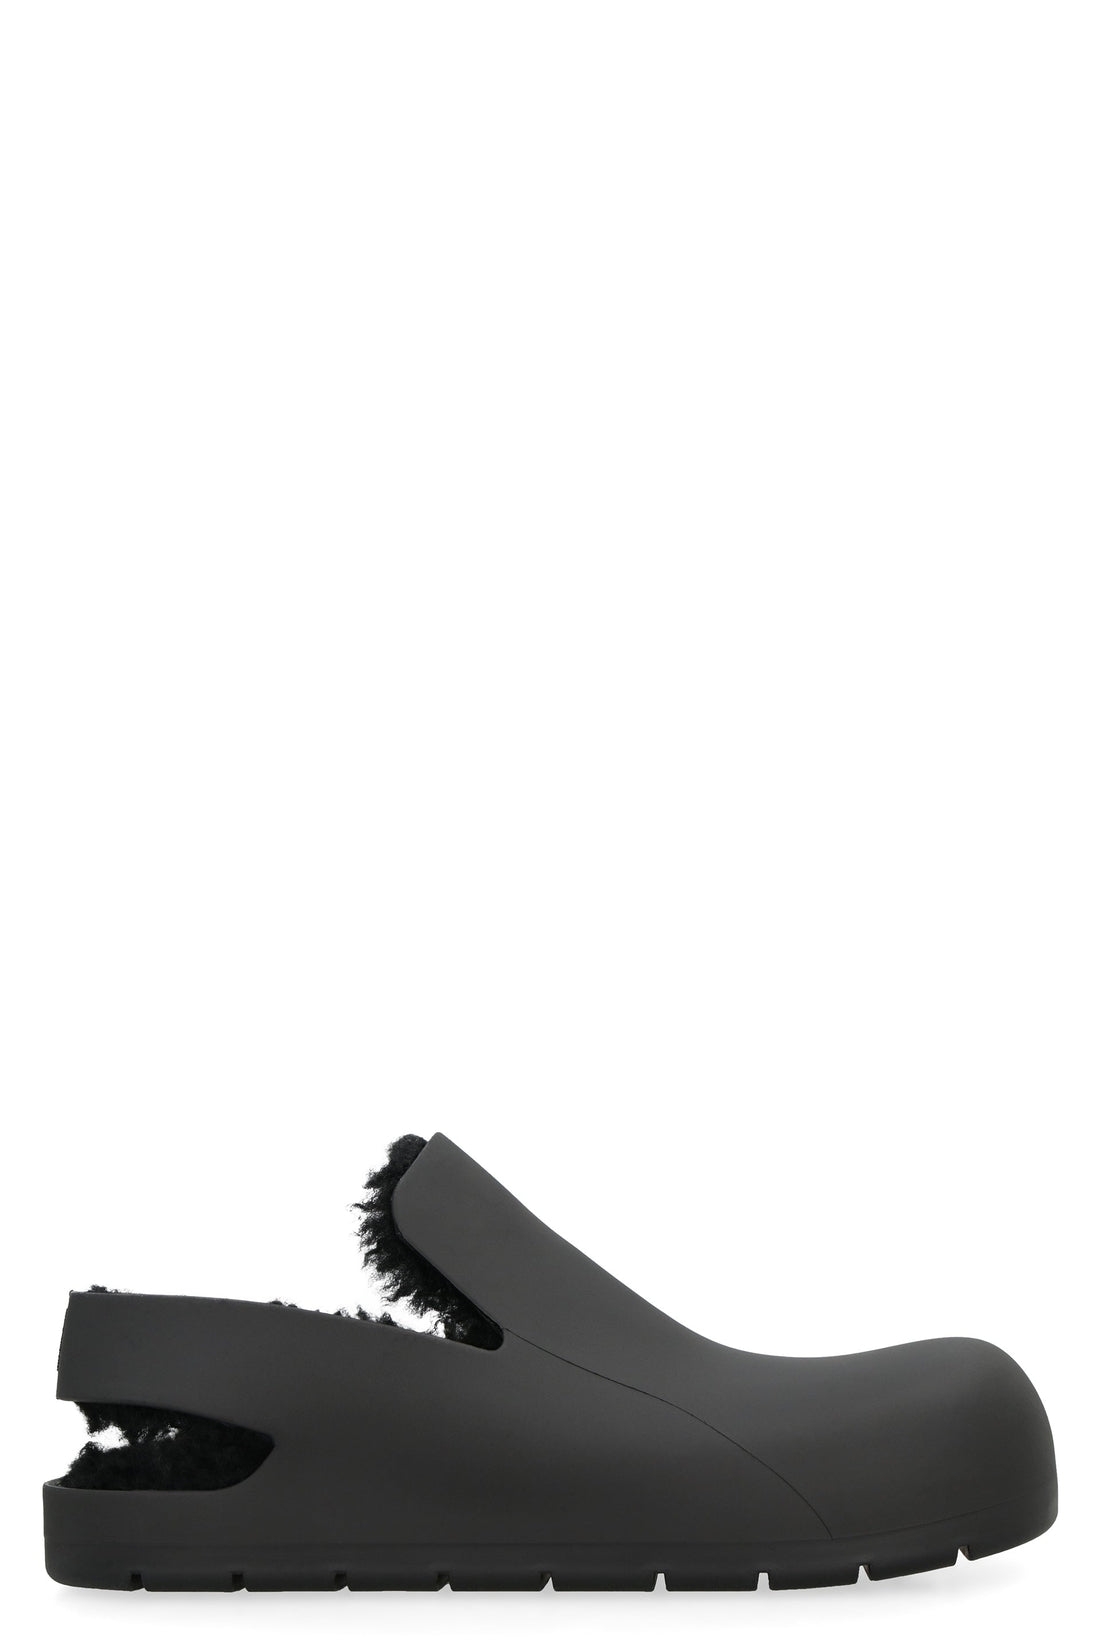 Bottega Veneta-OUTLET-SALE-Puddle In Shearling slingback sandals-ARCHIVIST